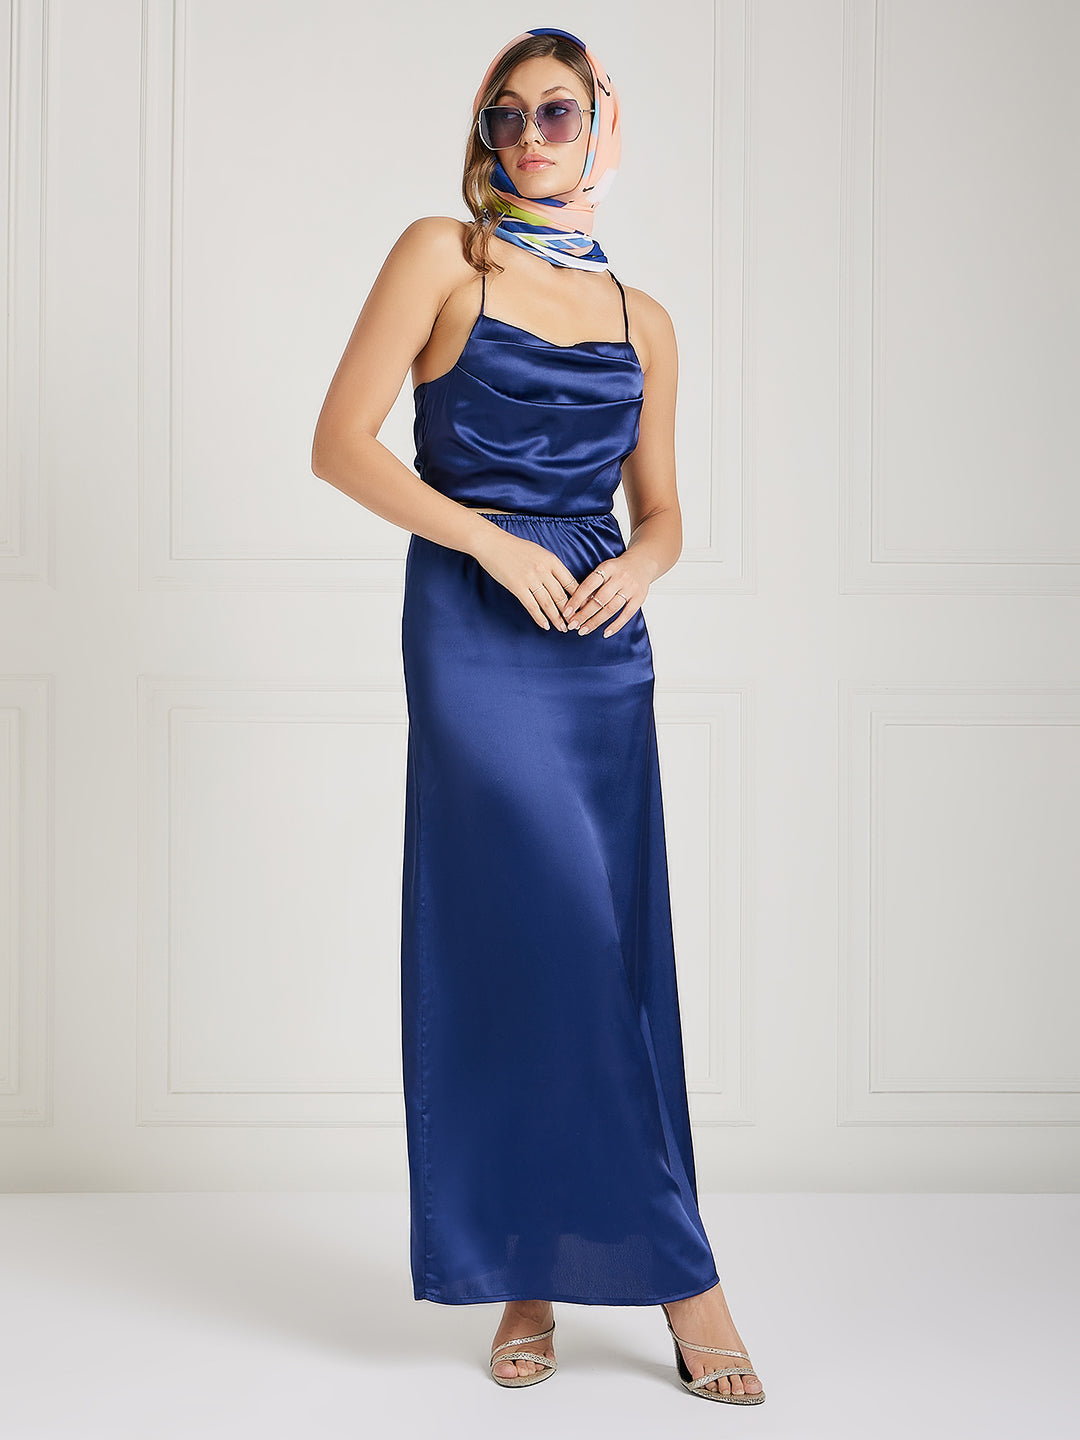 Athena Women Peach-Coloured & Blue Printed Scarf - Athena Lifestyle